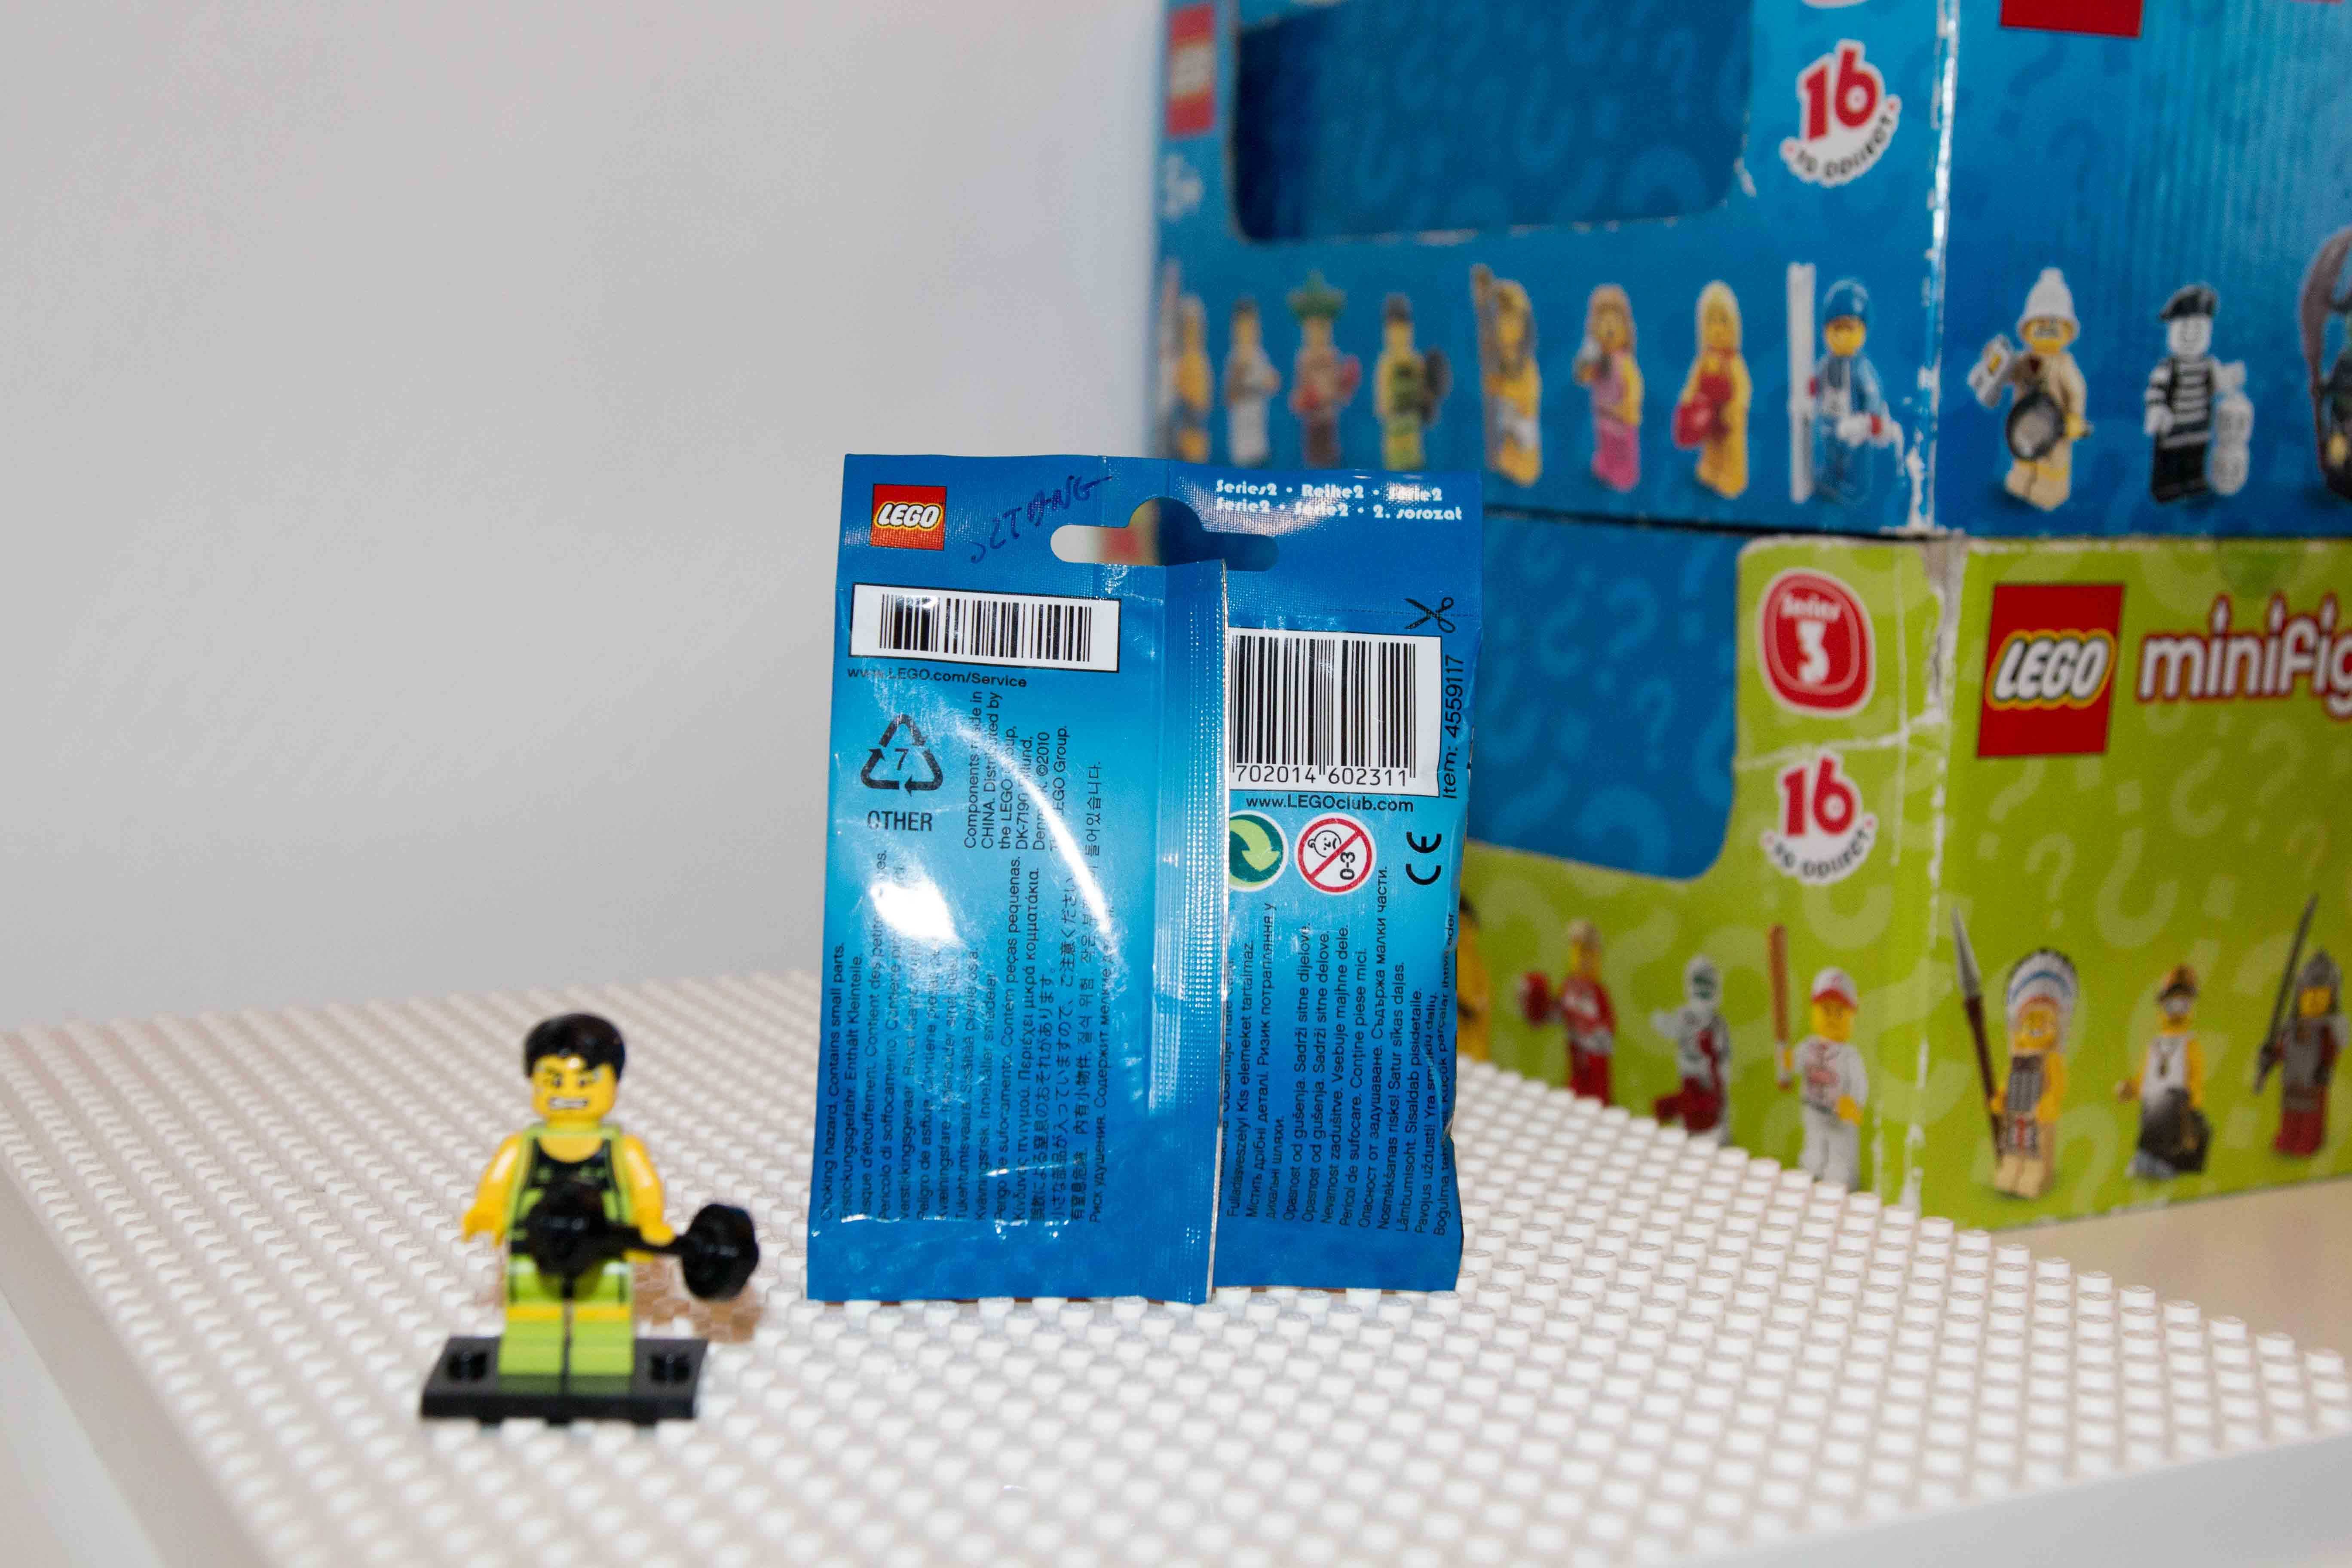 Sztangista nowy MISB - Minifigurki LEGO Seria 2 8684 ( z 2010 roku!)